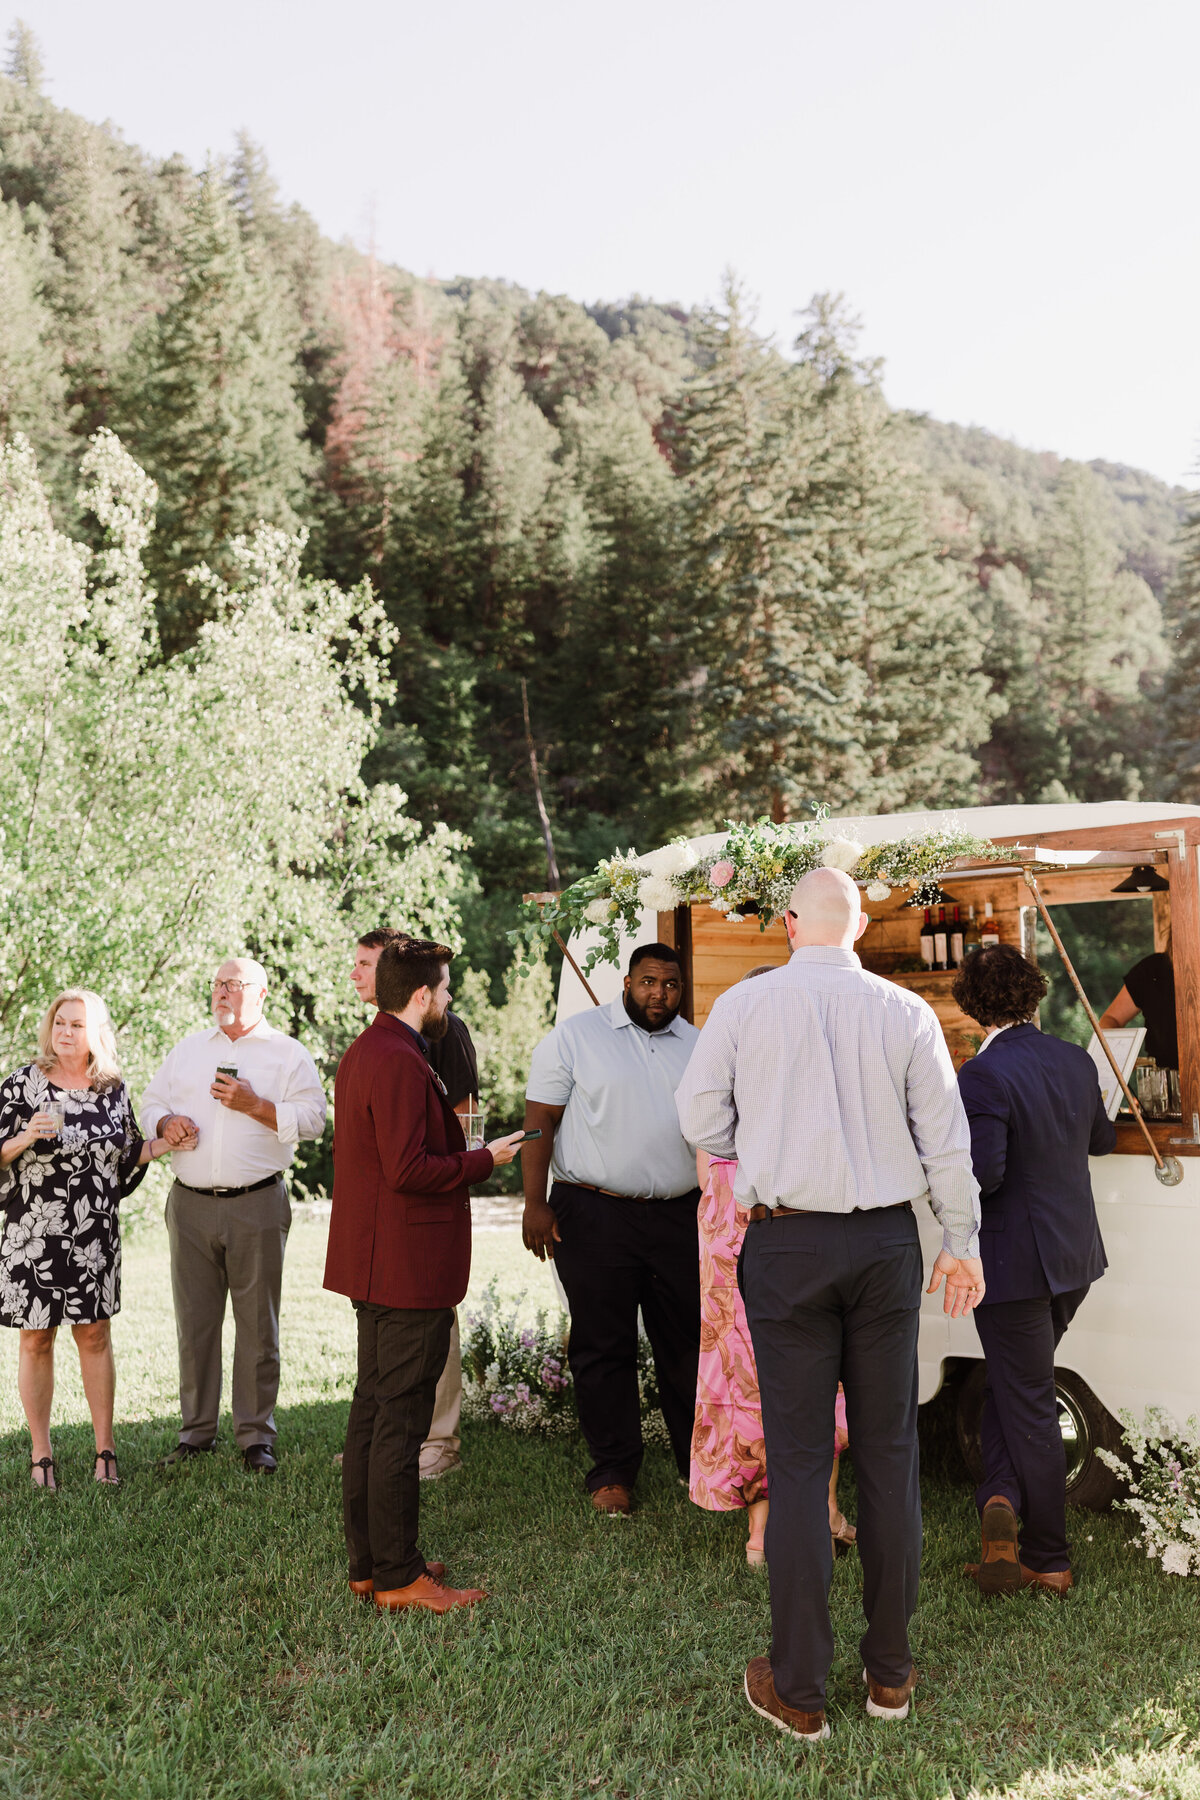 Guests mingling at Dallenbach Ranch Colorado Wedding reception